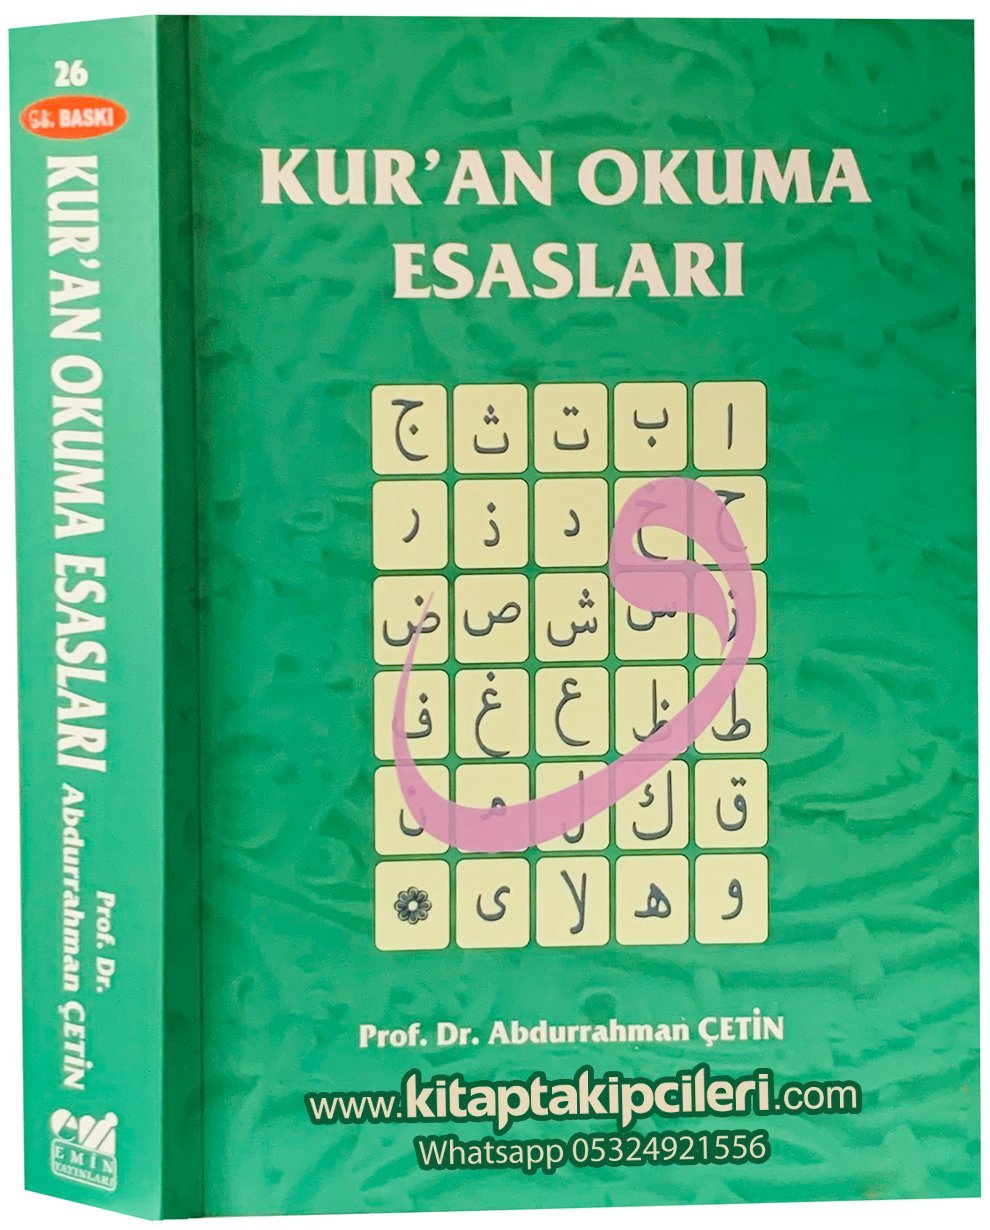 Kuran Okuma Esasları Tecvid, Prof. Dr. Abdurrahman Çetin